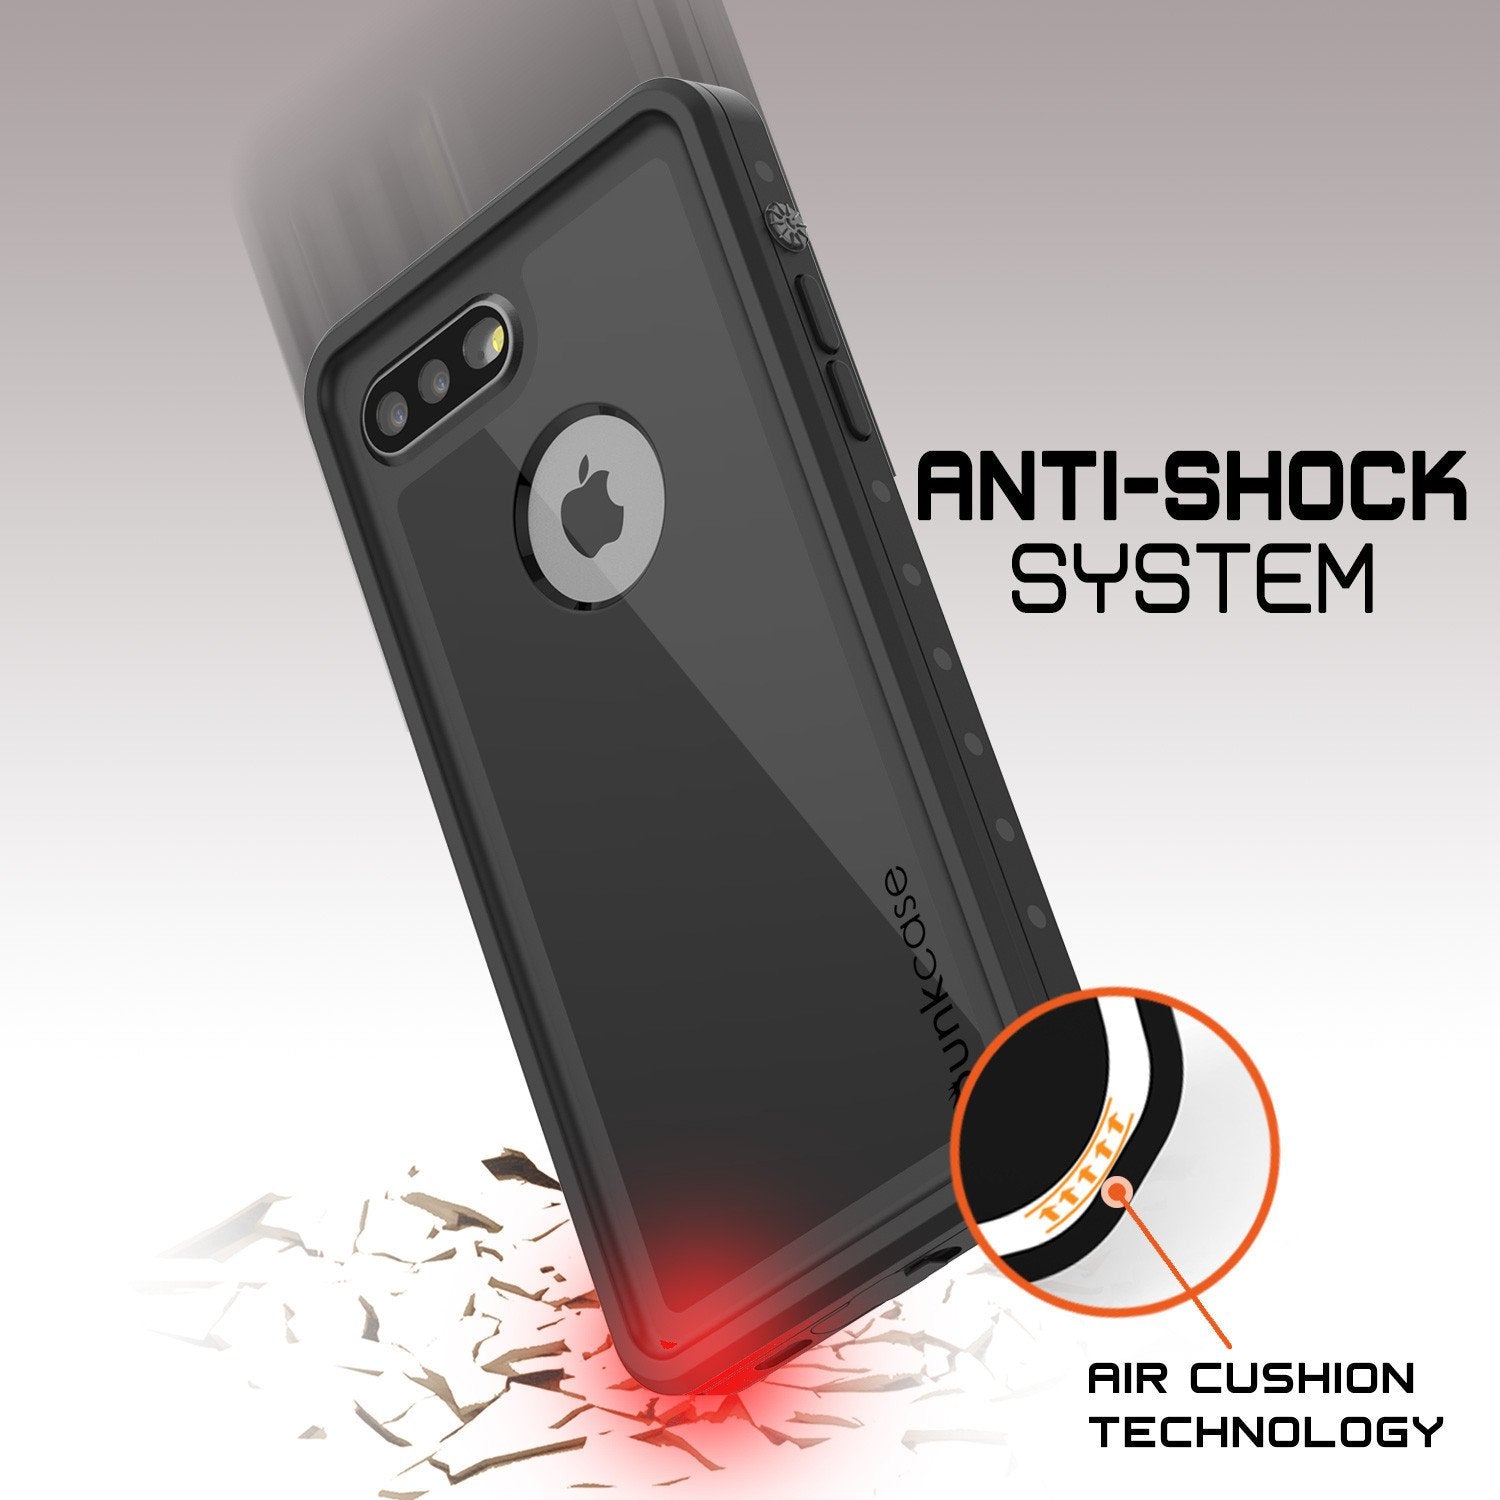 iPhone 8+ Plus Waterproof Case, Punkcase [StudStar Series] [Black] [Slim Fit] [IP68 Certified] [Shockproof] [Dirtproof] Armor Cover